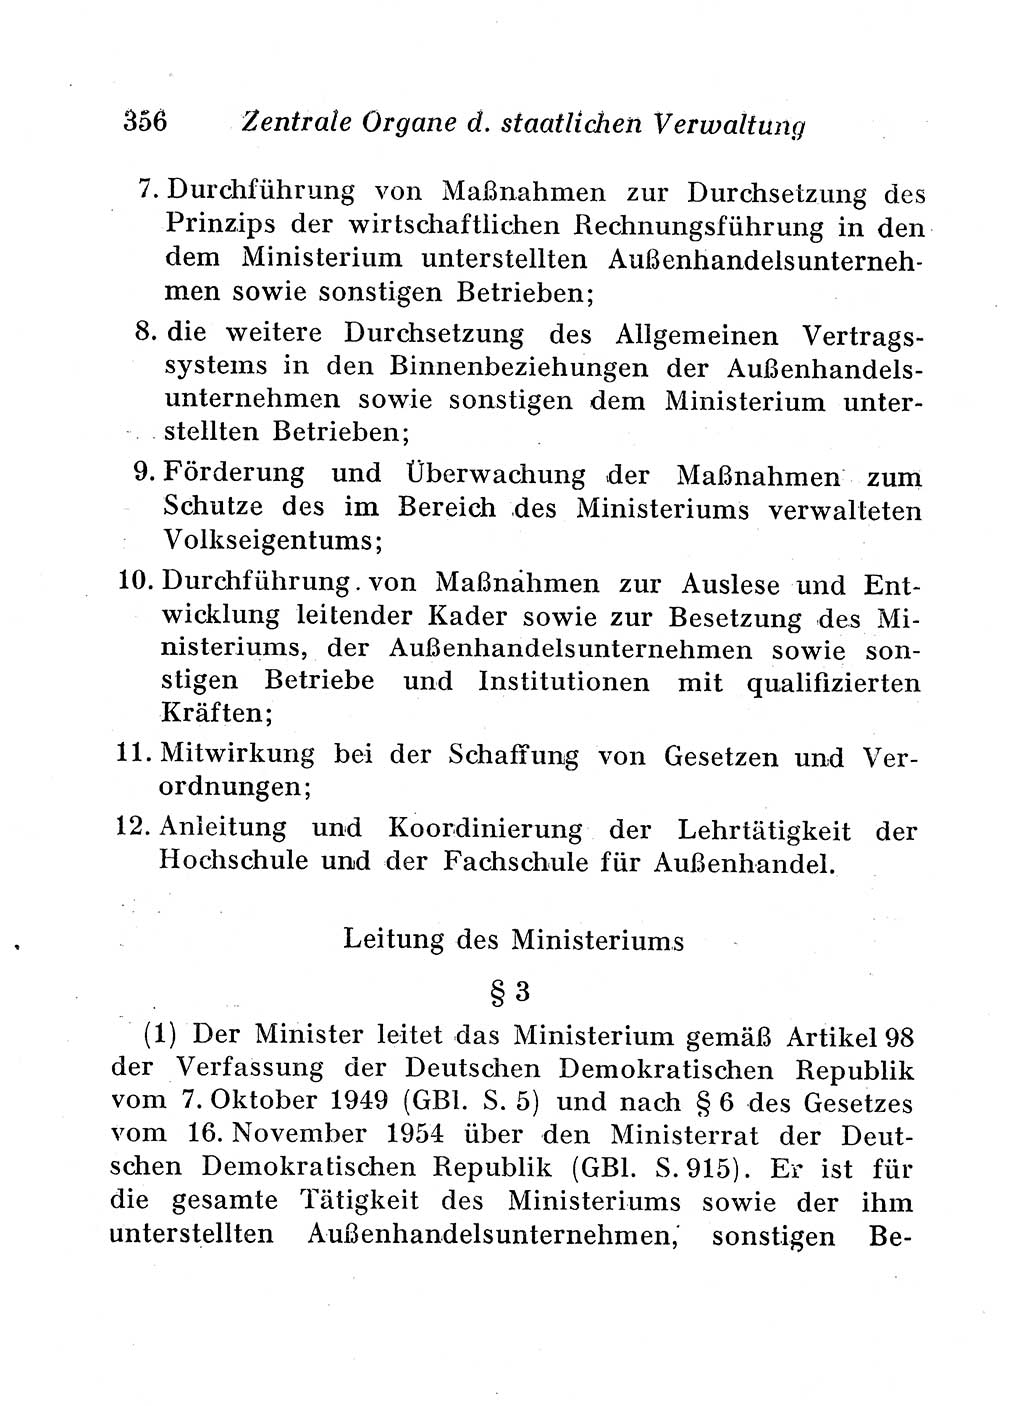 Staats- und verwaltungsrechtliche Gesetze der Deutschen Demokratischen Republik (DDR) 1958, Seite 356 (StVerwR Ges. DDR 1958, S. 356)